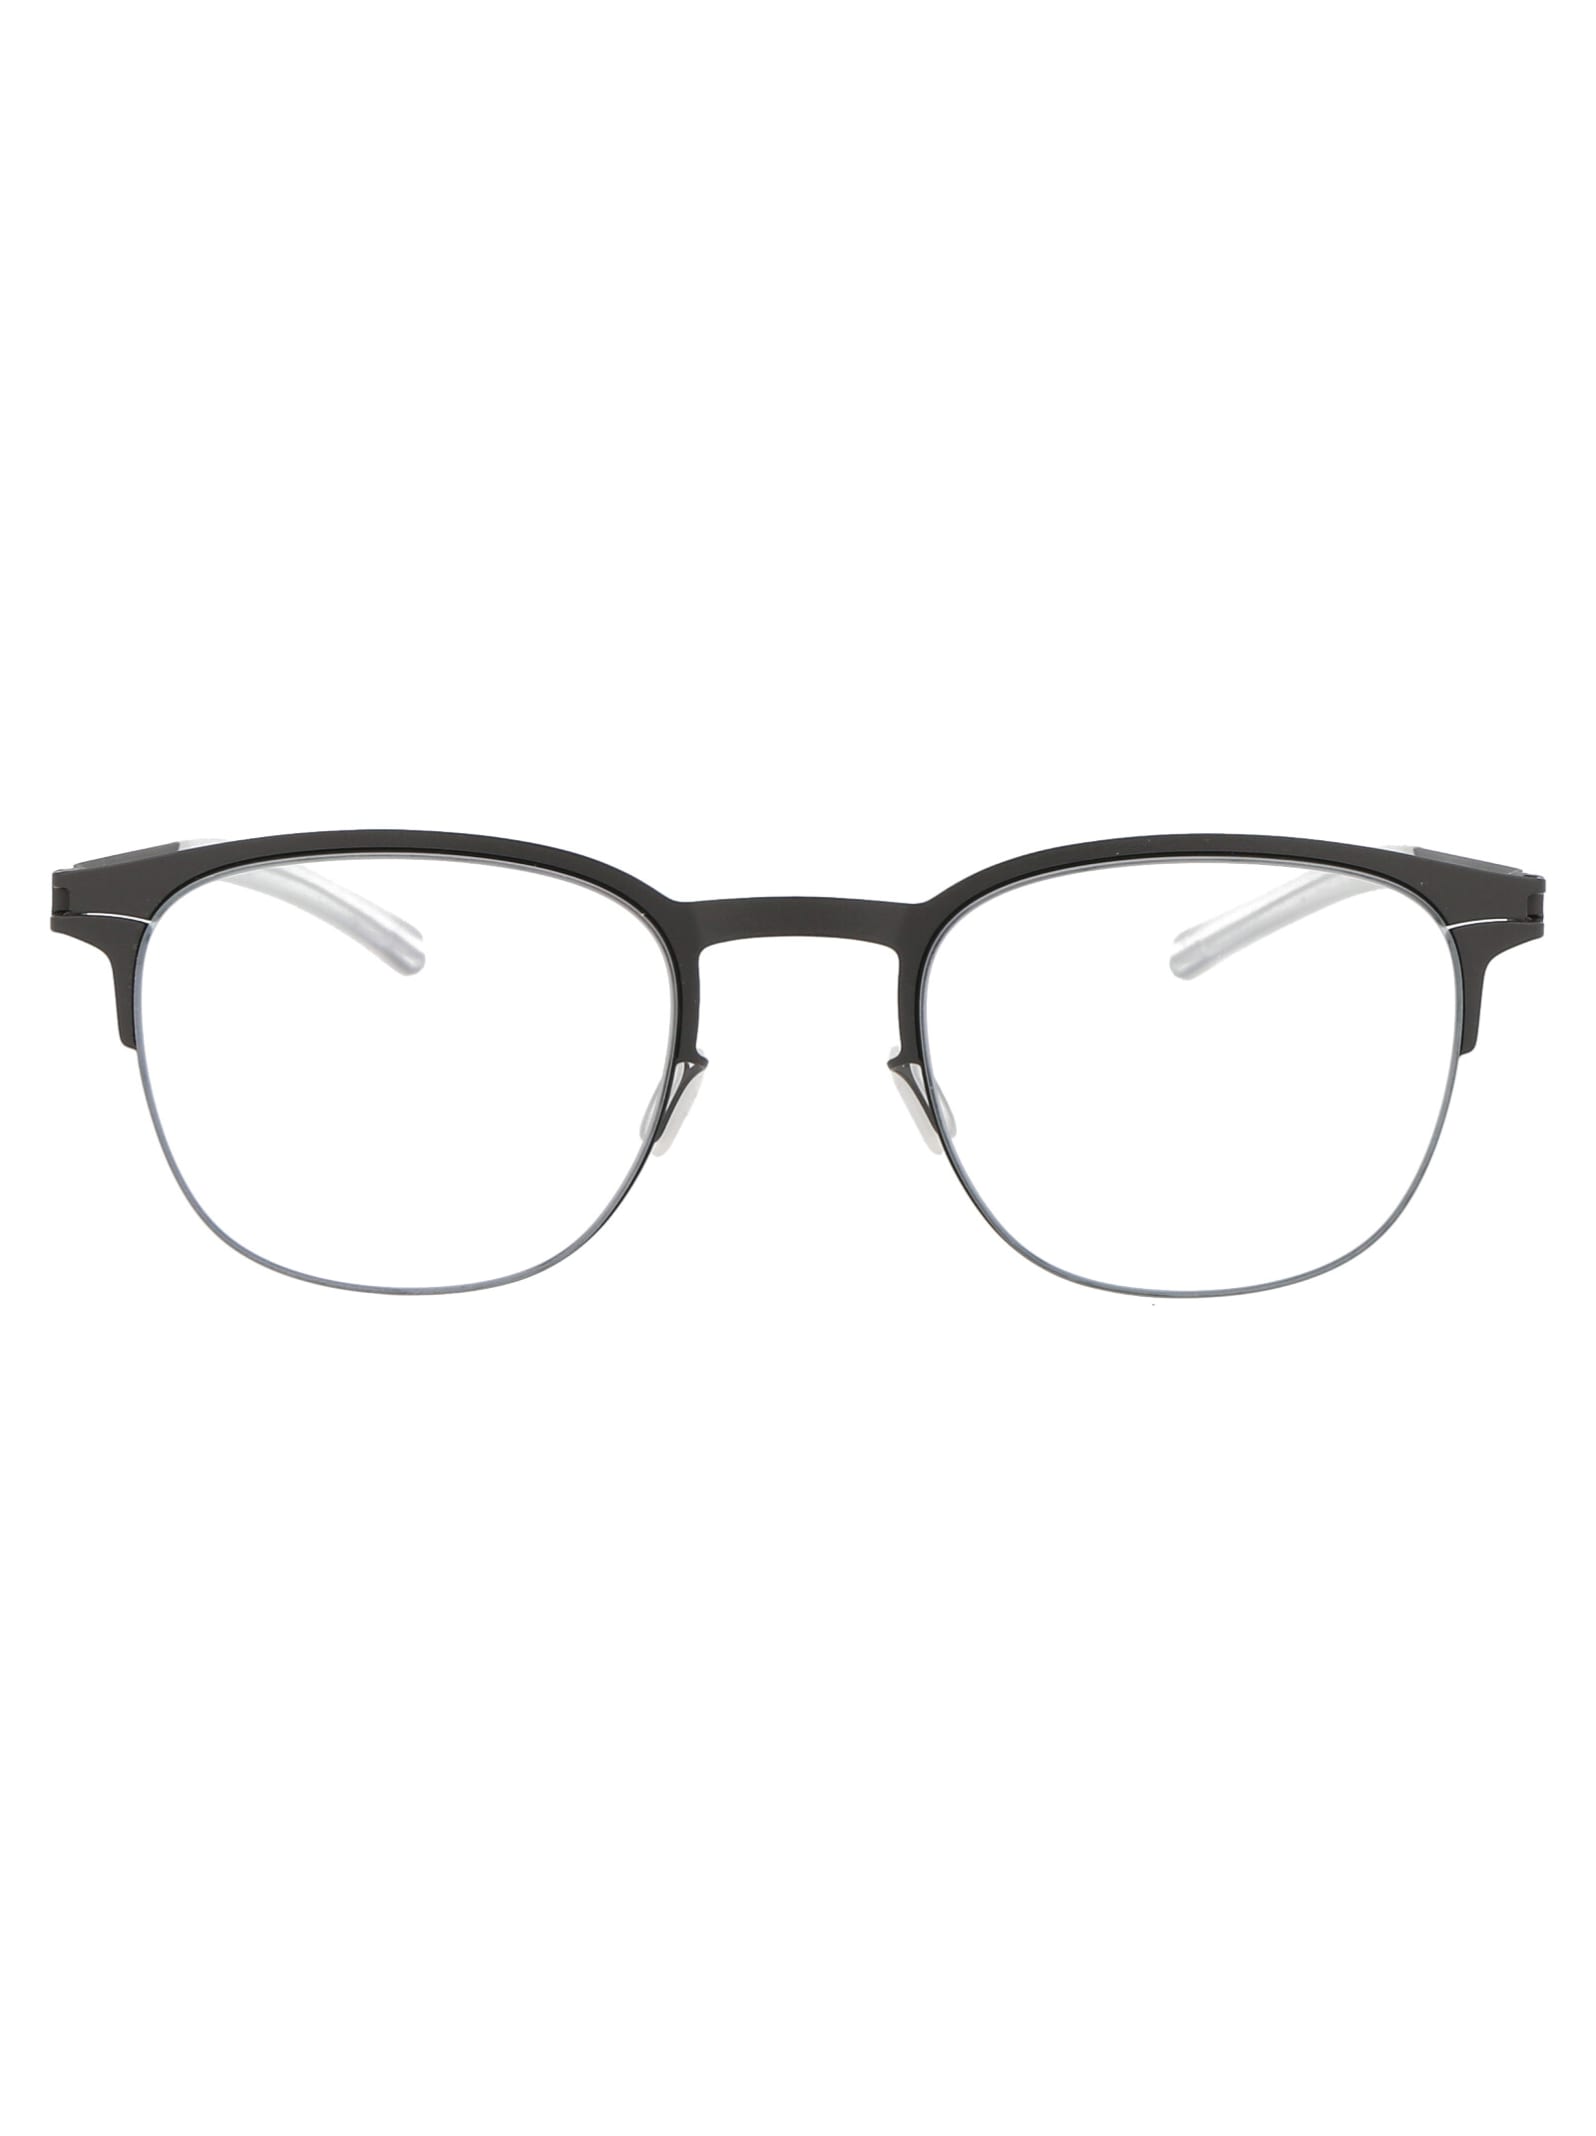 Mykita Neville Glasses In 515 Storm Grey/black Clear